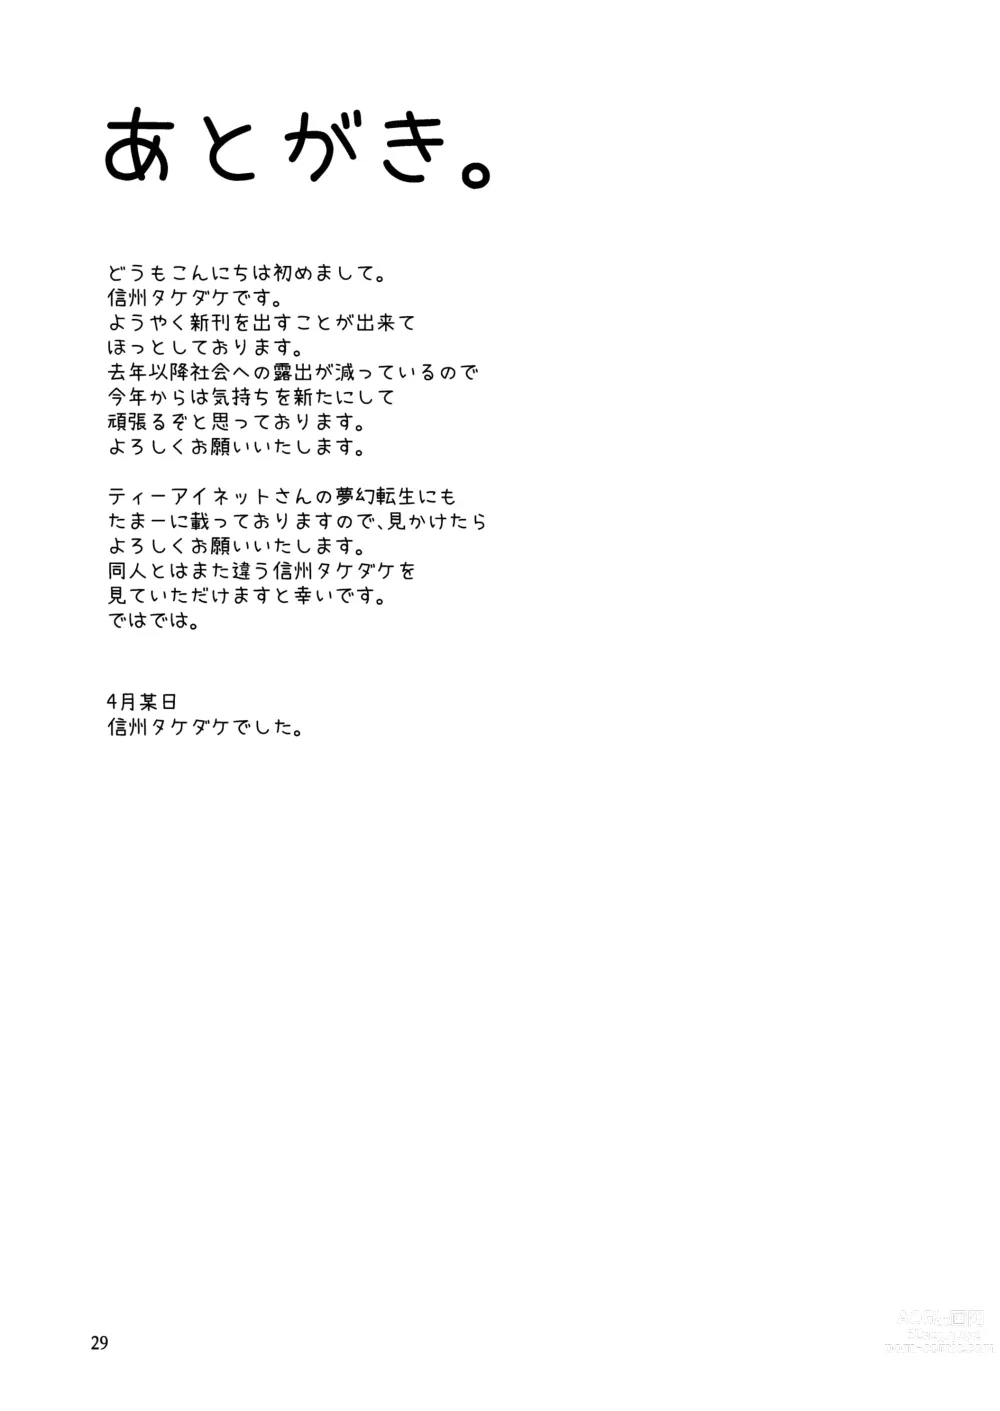 Page 28 of doujinshi Rozeria-san wa Kotowarenai.